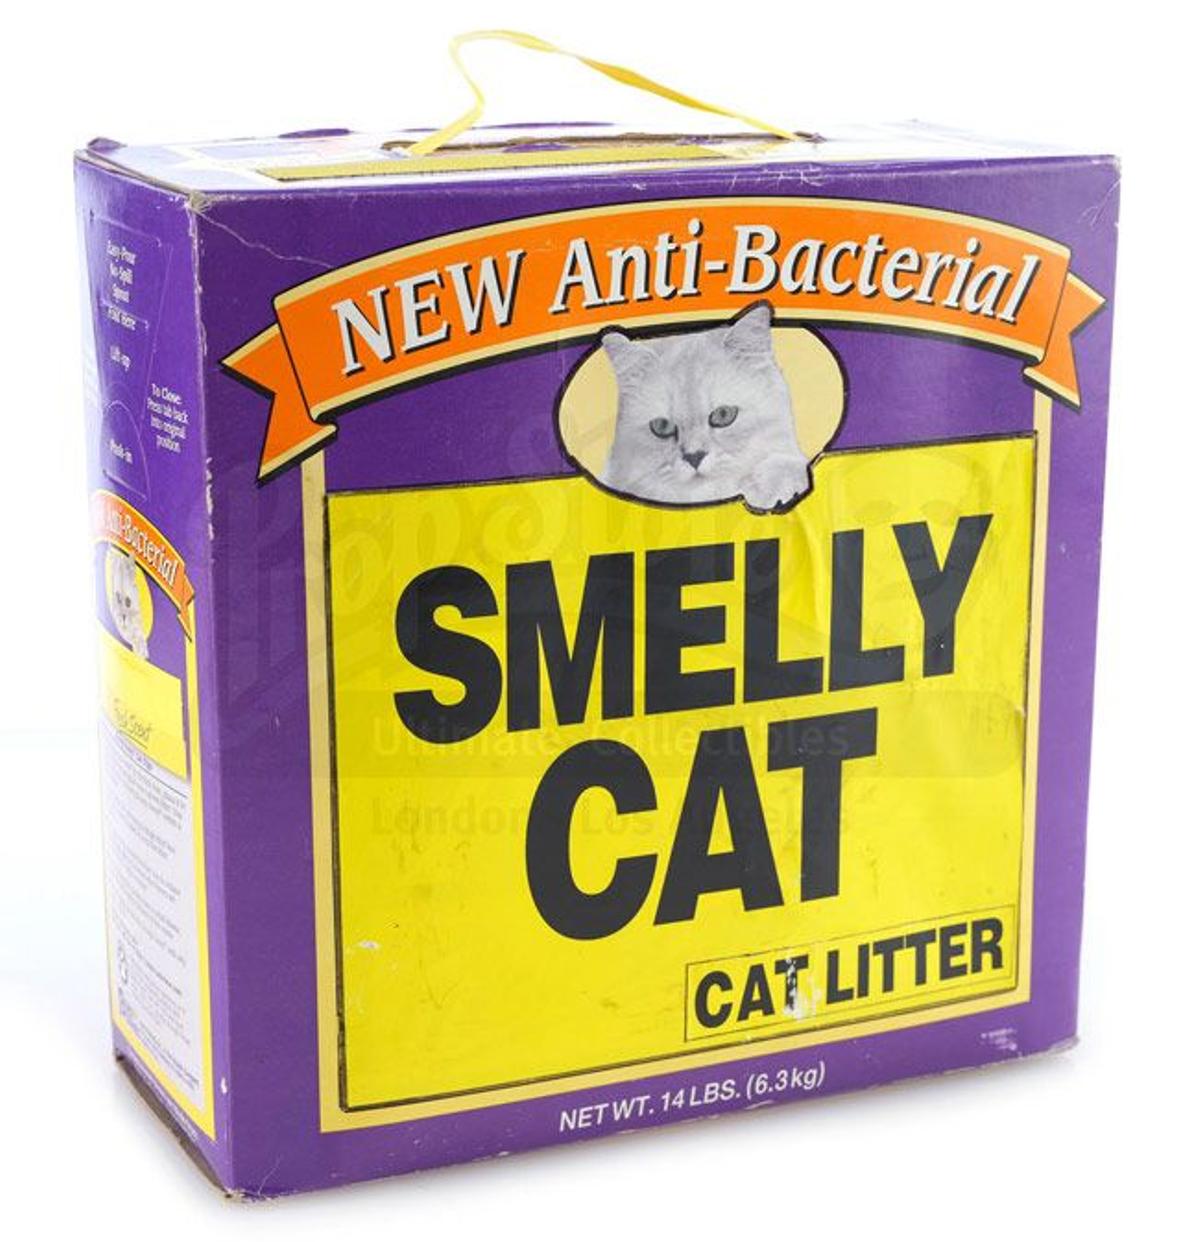 Subasta de 'Friends': producto antibacteriano para gatos malolientes